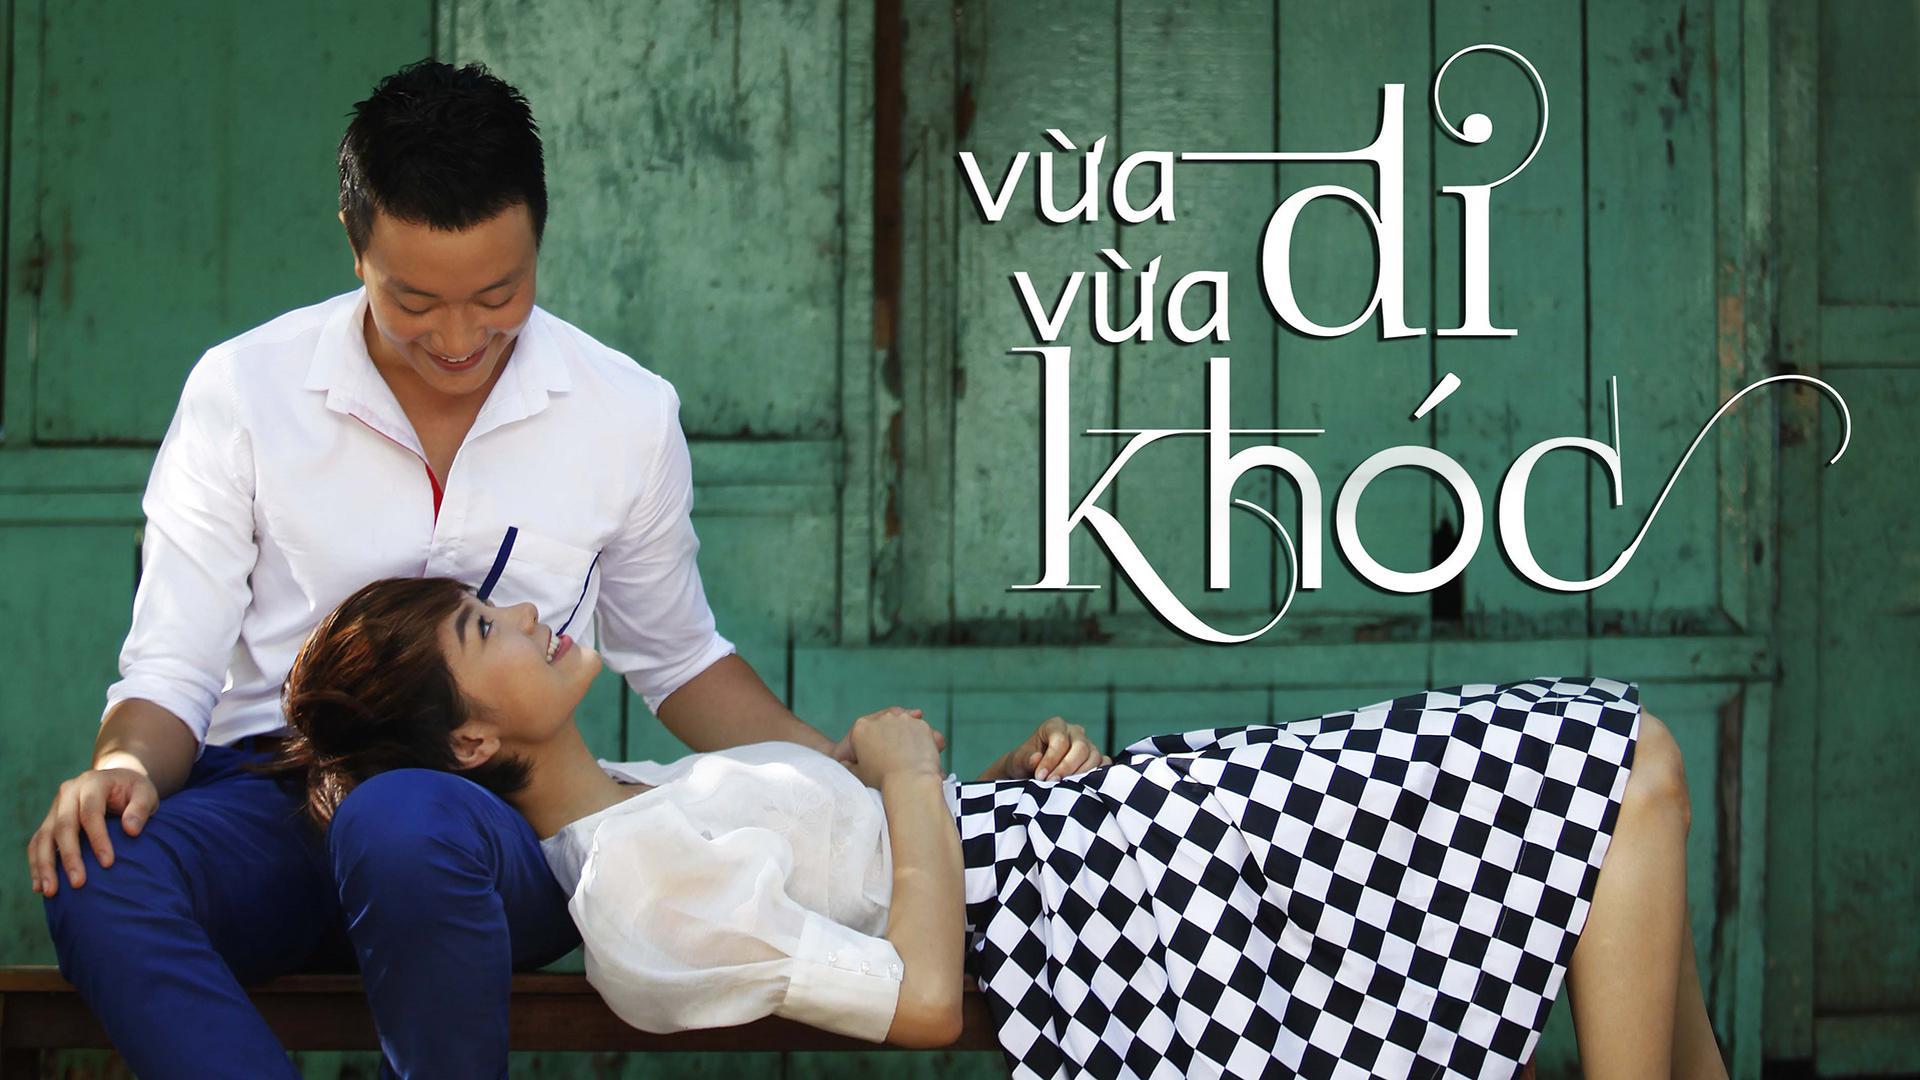 Phim Việt Vừa đi vừa khóc (2014)